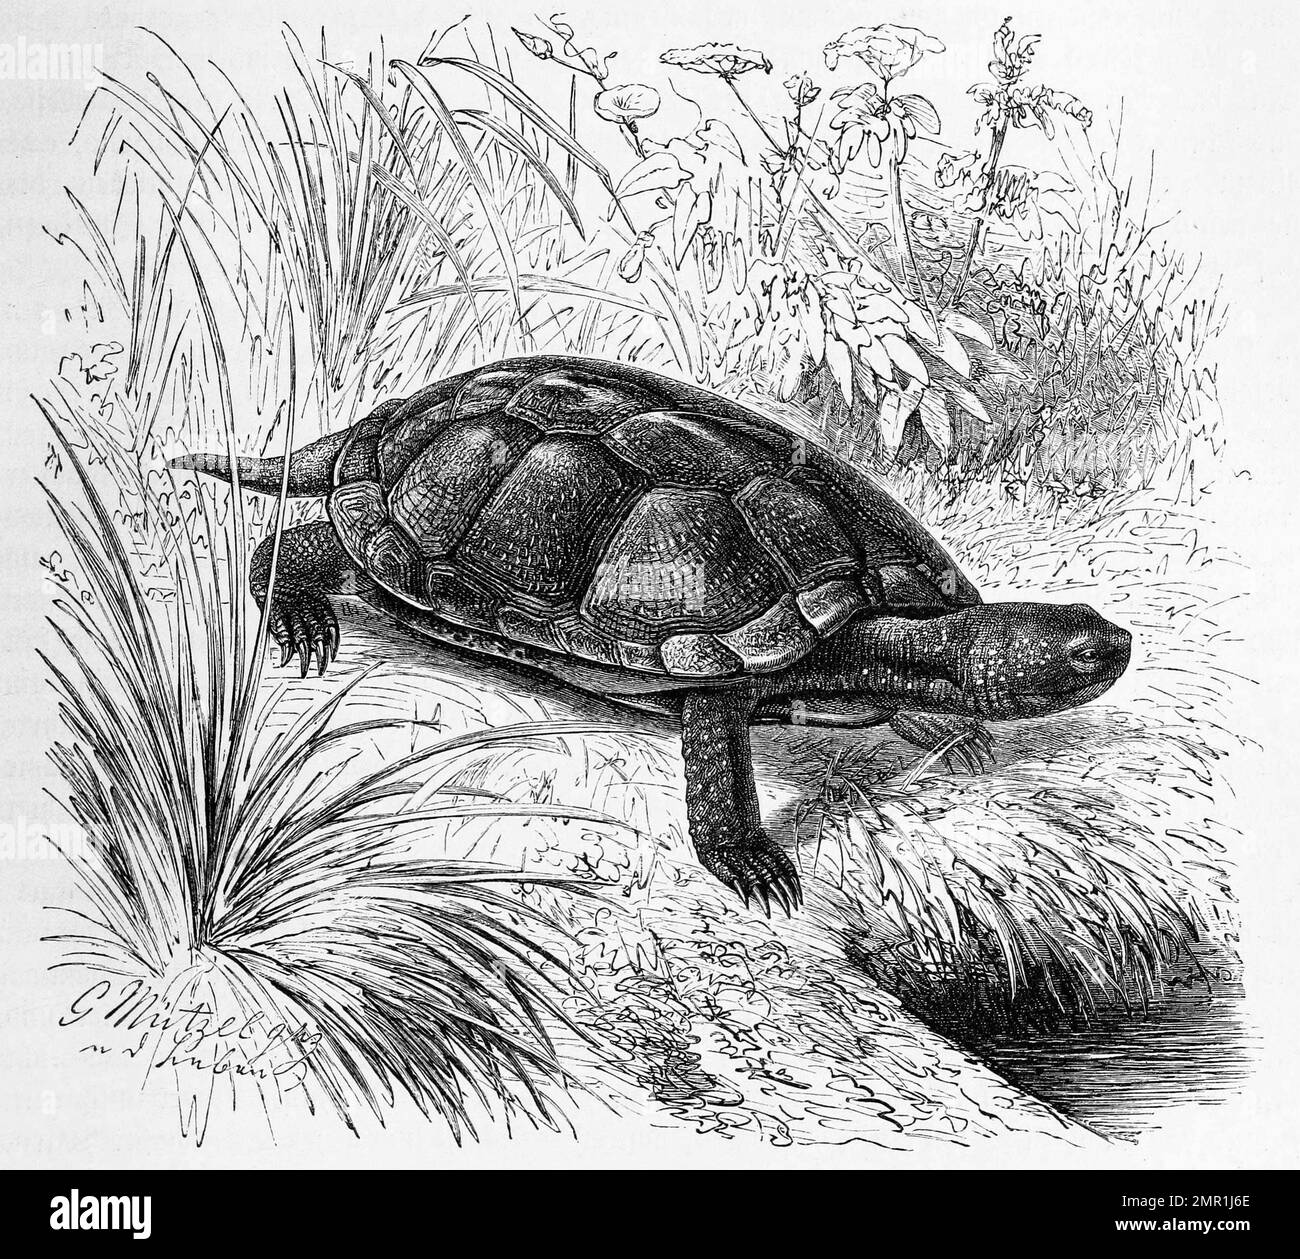 Reptilien, Europäische Sumpfschildkröte, Emys orbicularis ist eine kleine bis mittelgroße, fleischfressende und überwiegend im Wasser lebende Schildkröte, Historisch, digital restaurierte Reproduktion von einer Vorlage aus dem 19. Jahrhundert Stock Photo